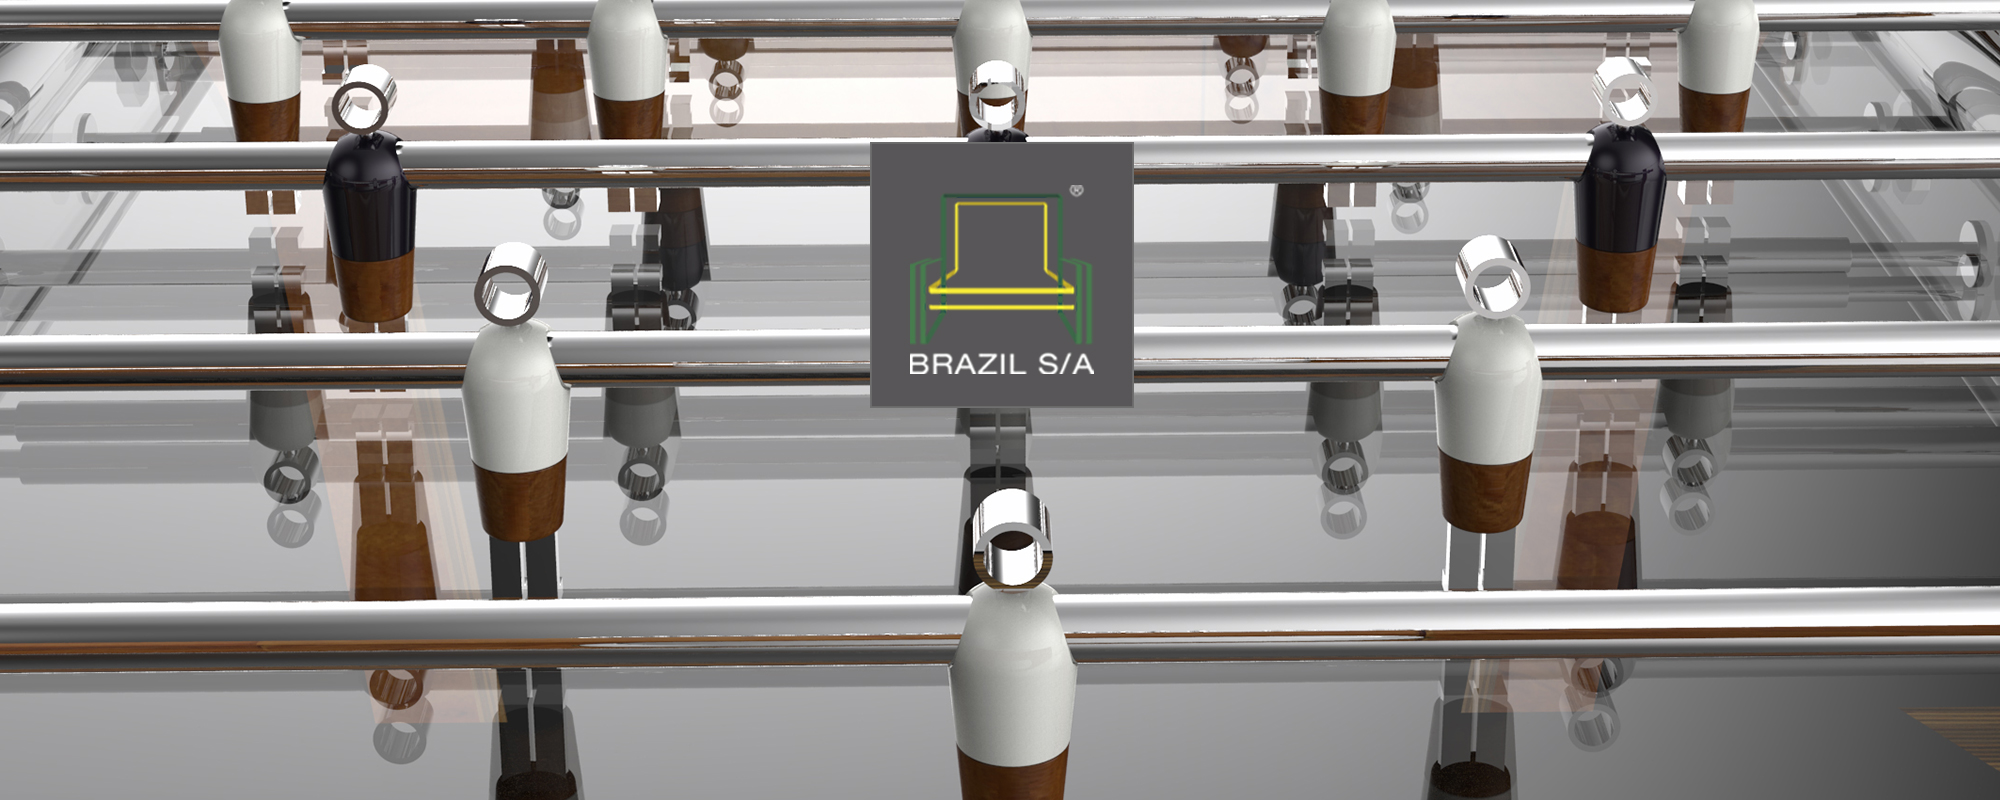 Brazil S/A default banner